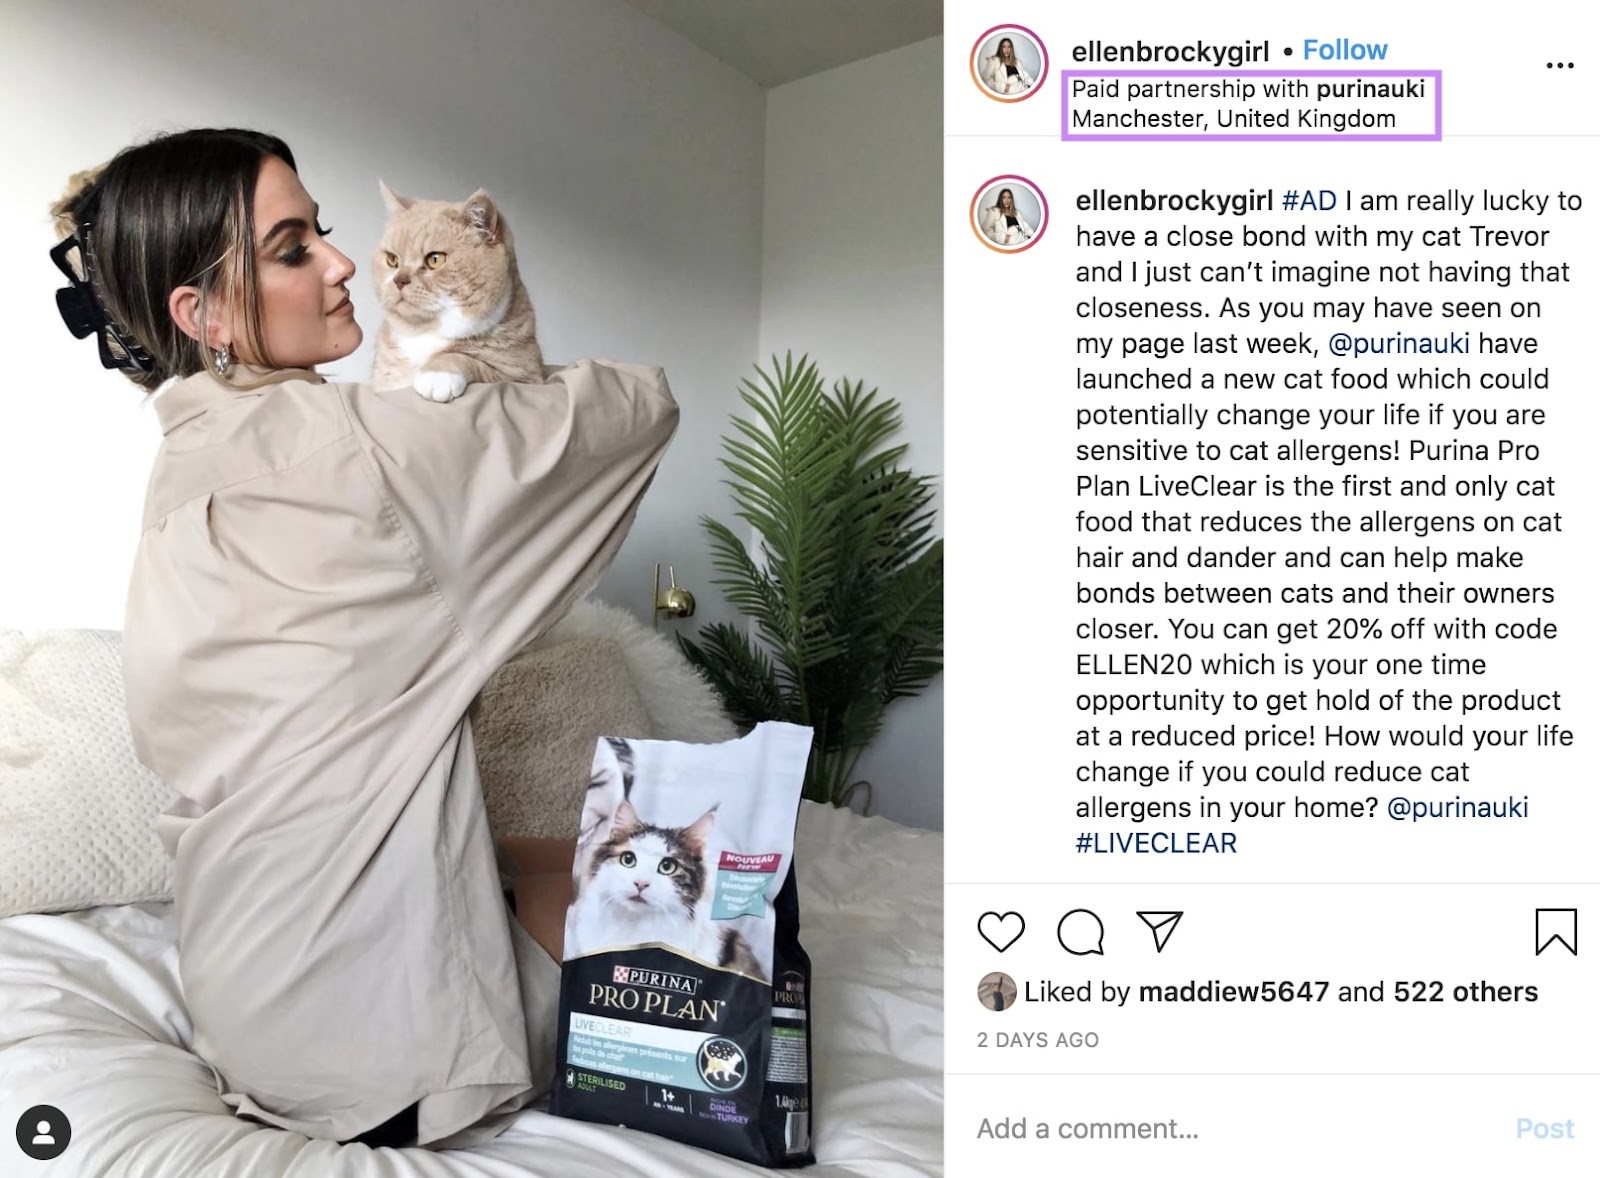 Ellen Brockbank's Instagram post promoting Purina's cat food